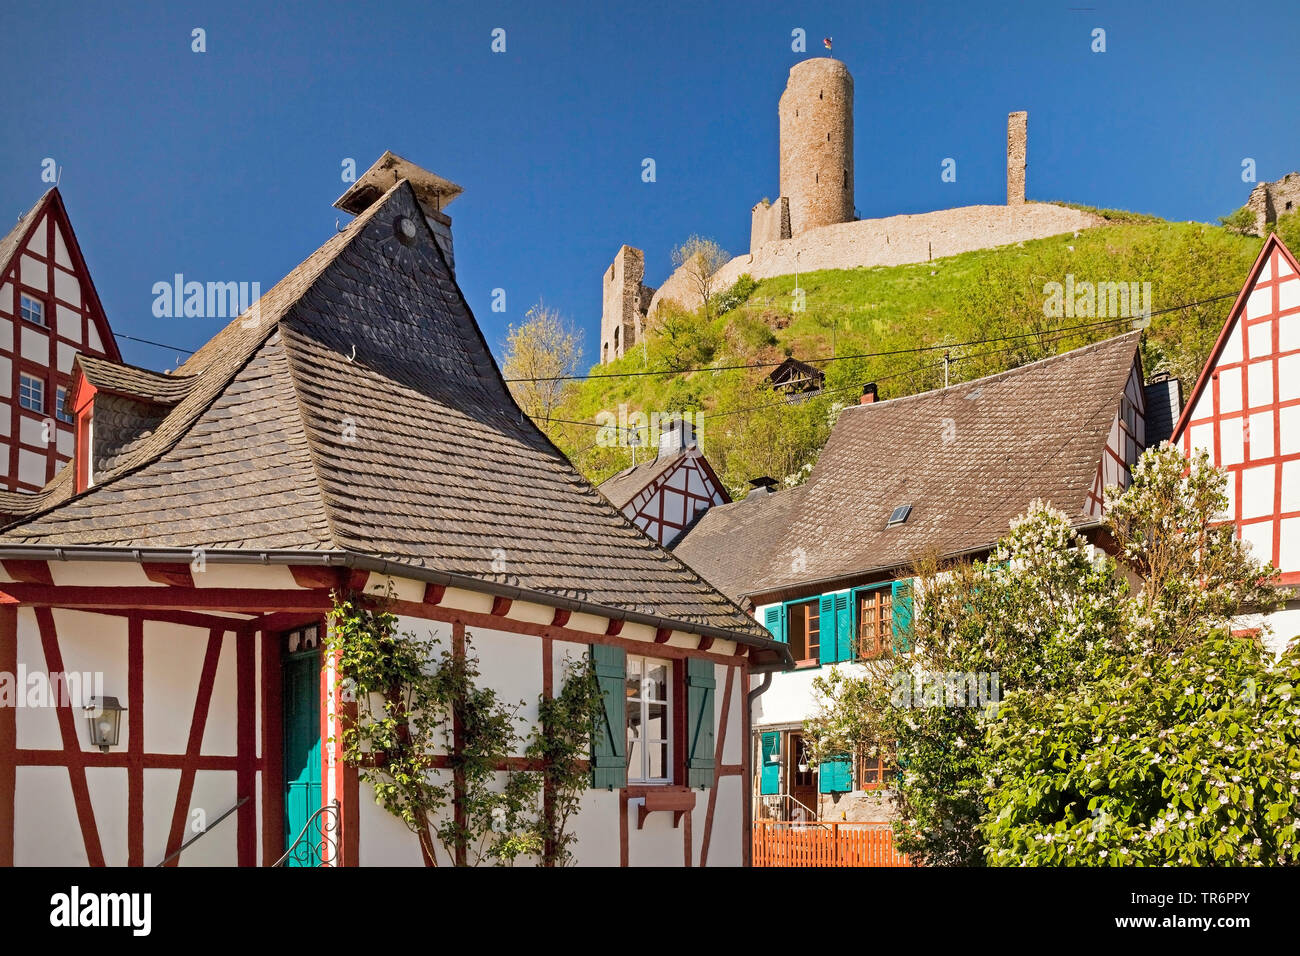 Maisons à colombages dans le centre historique et les ruines du château Lowenburg, Allemagne, Rhénanie-Palatinat, Eifel, Monreal Banque D'Images